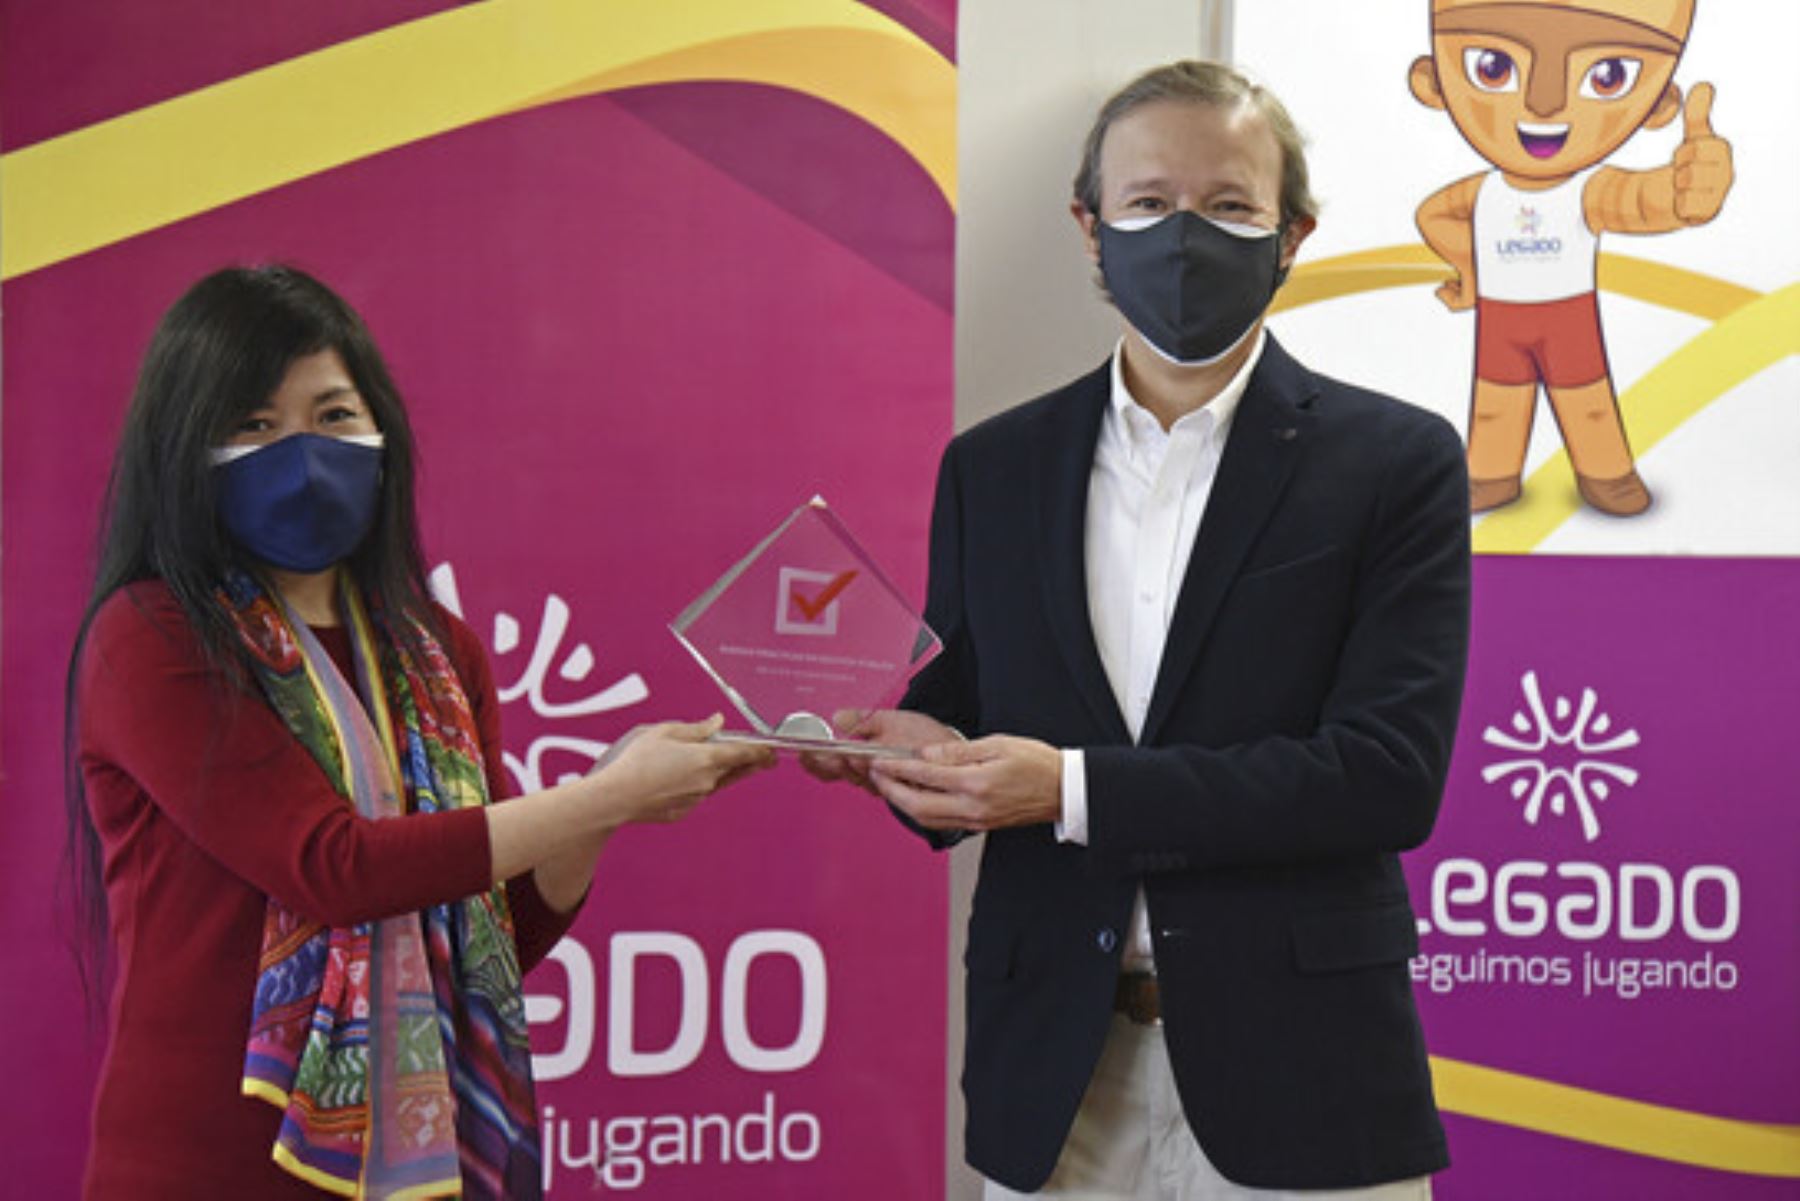 El reconocimiento fue concedido en mérito a su innovador proceso de contratación internacional de oxígeno líquido medicinal, puesto en marcha para hacer frente a la emergencia sanitaria en el Perú a causa de la covid-19. ANDINA/ Legado